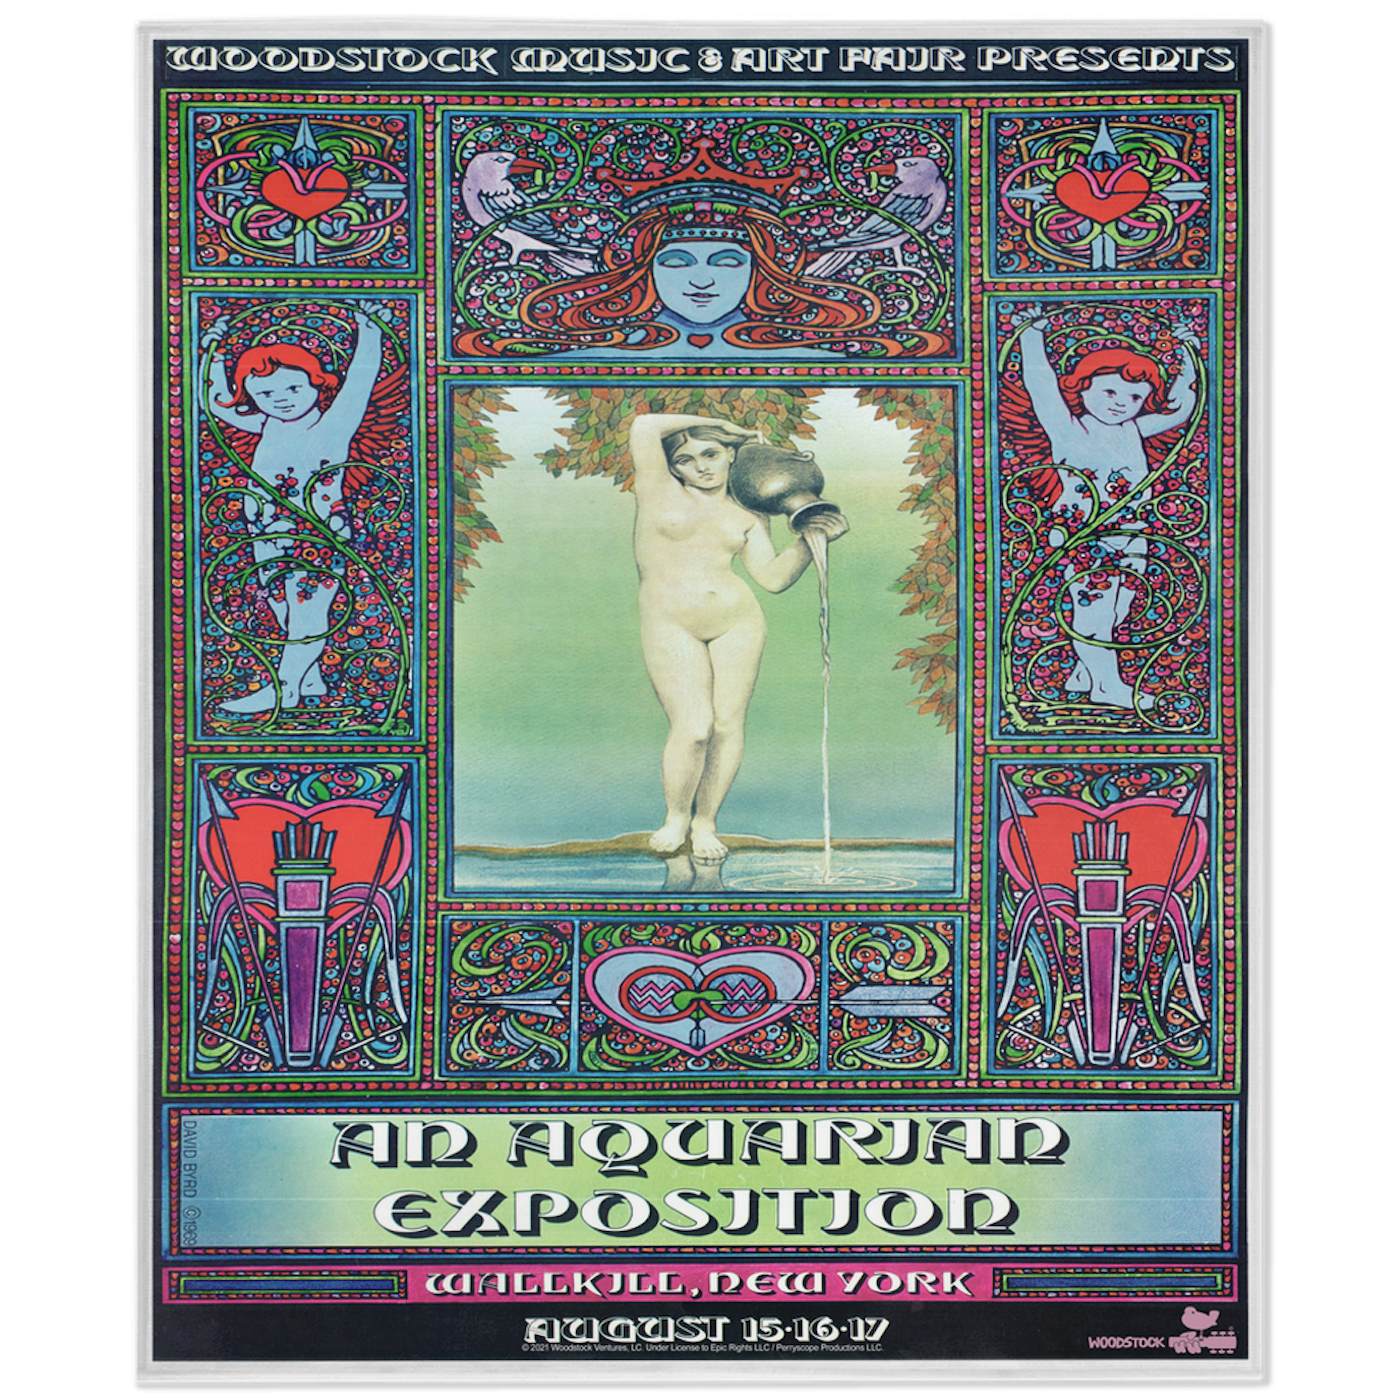 Woodstock Minky Blanket | Aquarian Exposition Concert Poster Woodstock Blanket (Merchbar Exclusive)